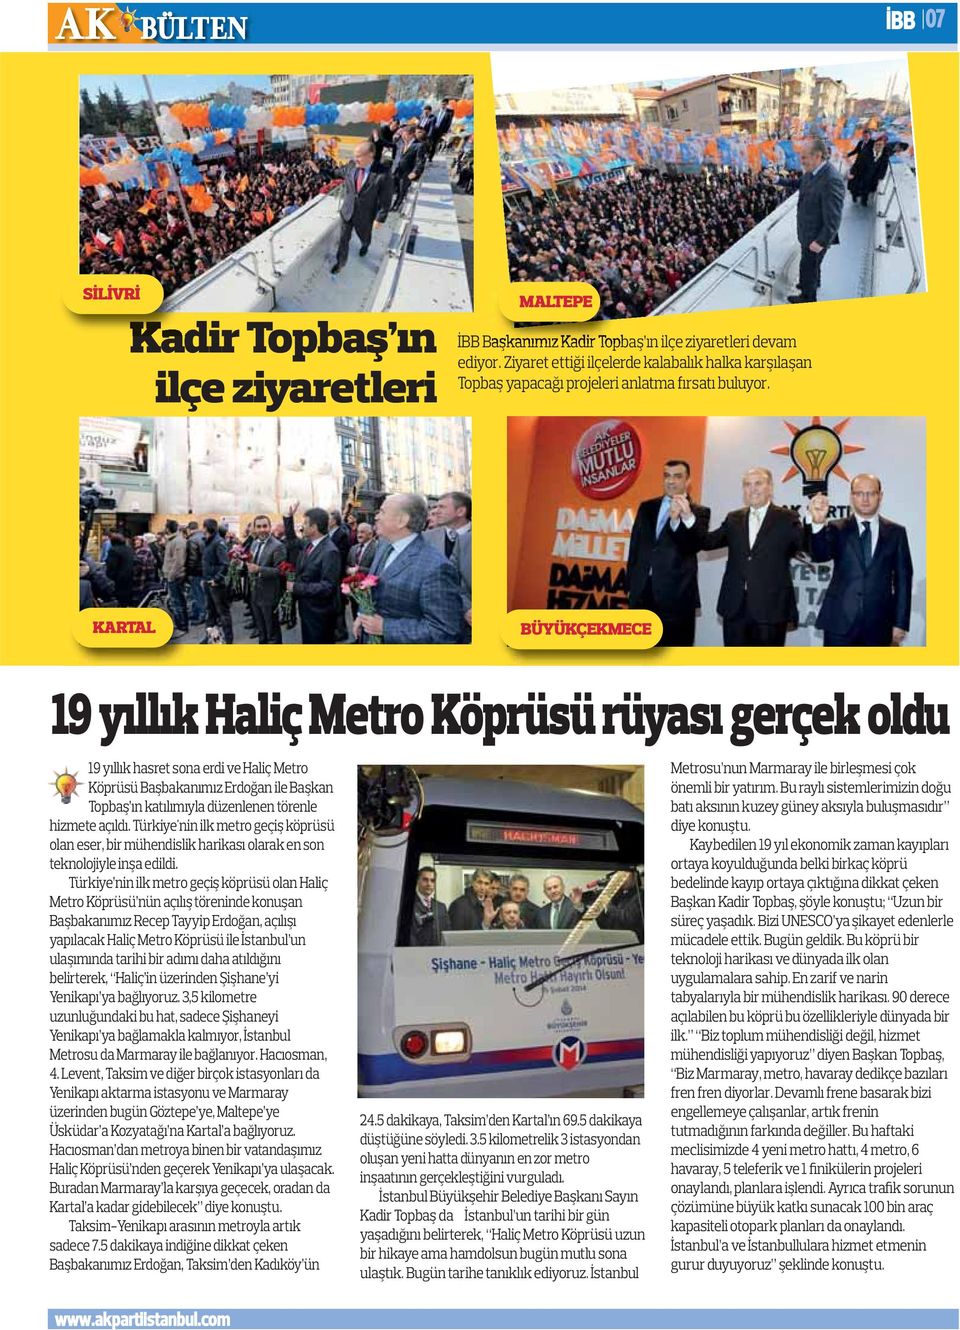 KARTAL BÜYÜKÇEKMECE 19 yıllık Haliç Metro Köprüsü rüyası gerçek oldu 19 yıllık hasret sona erdi ve Haliç Metro Köprüsü Başbakanımız Erdoğan ile Başkan Topbaş ın katılımıyla düzenlenen törenle hizmete